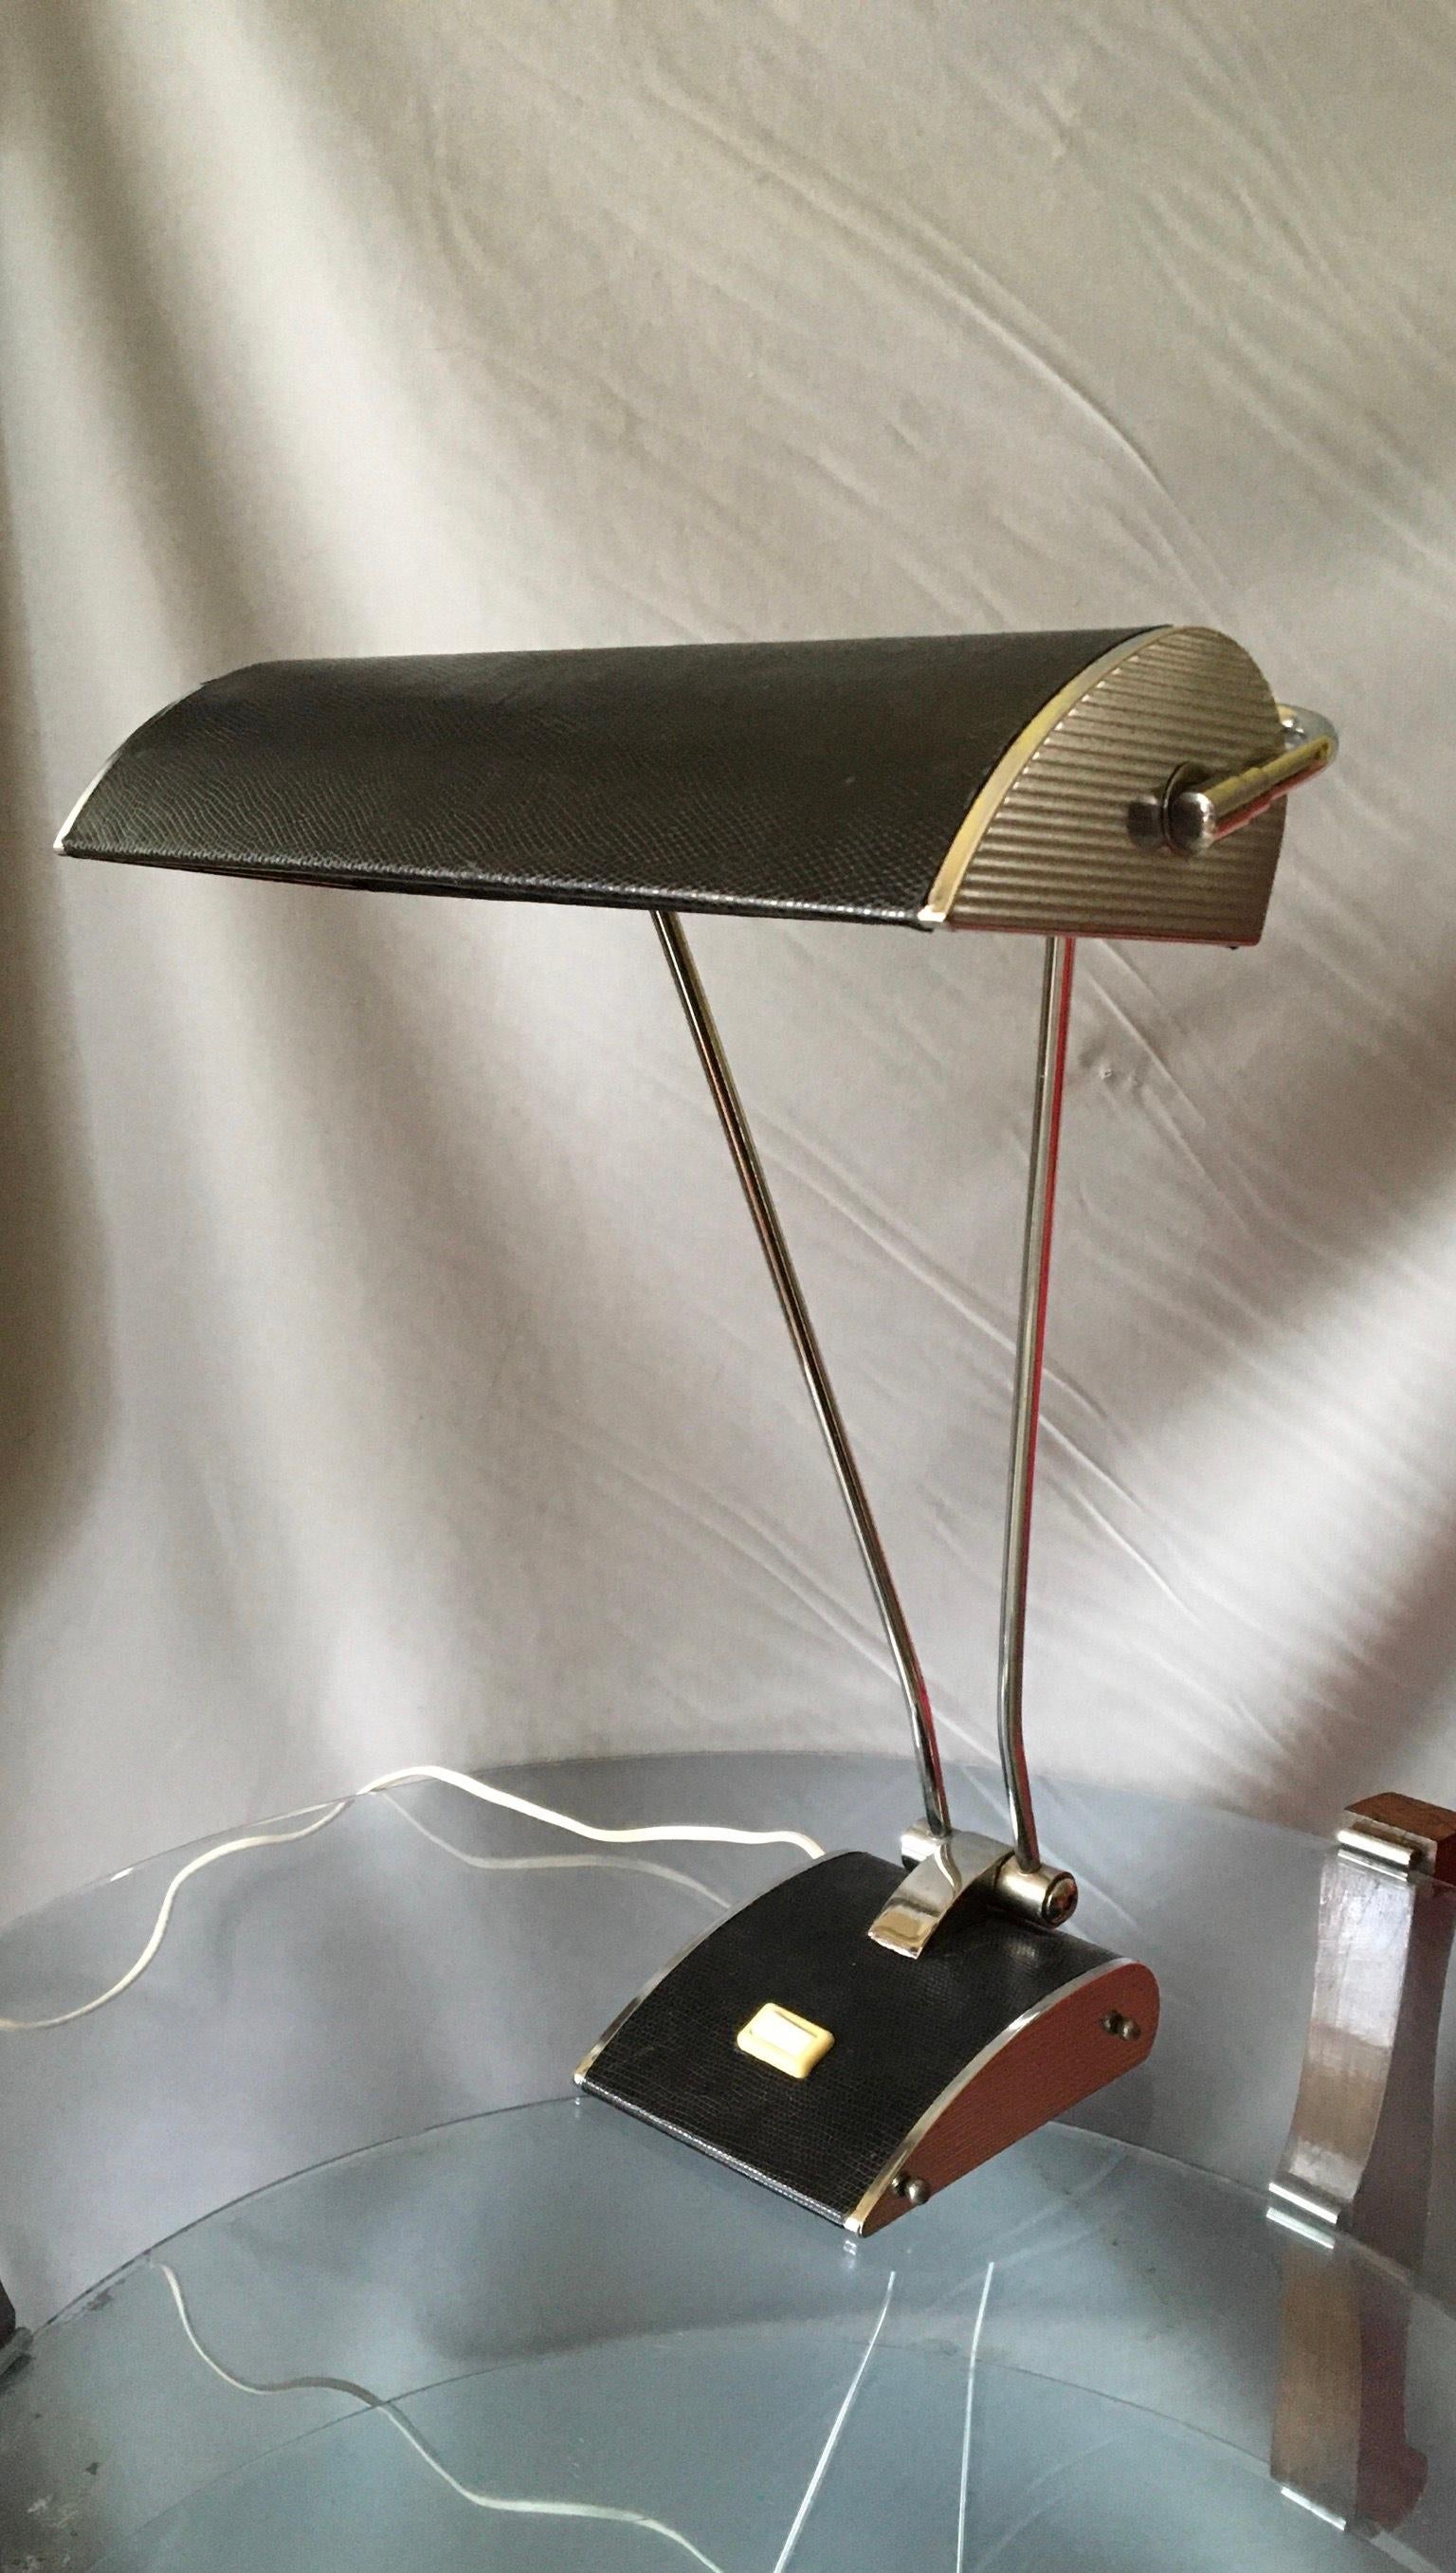 Sehr stilvolle französische Mid-Century Modern Tischlampe der 50er Jahre Design von Eileen Gray in der Luftfahrt-Stil verchromtem Metall und bedeckt In lézard Stil.
Der Reflektor kann gebogen und gedreht werden, um eine optimale Beleuchtung zu